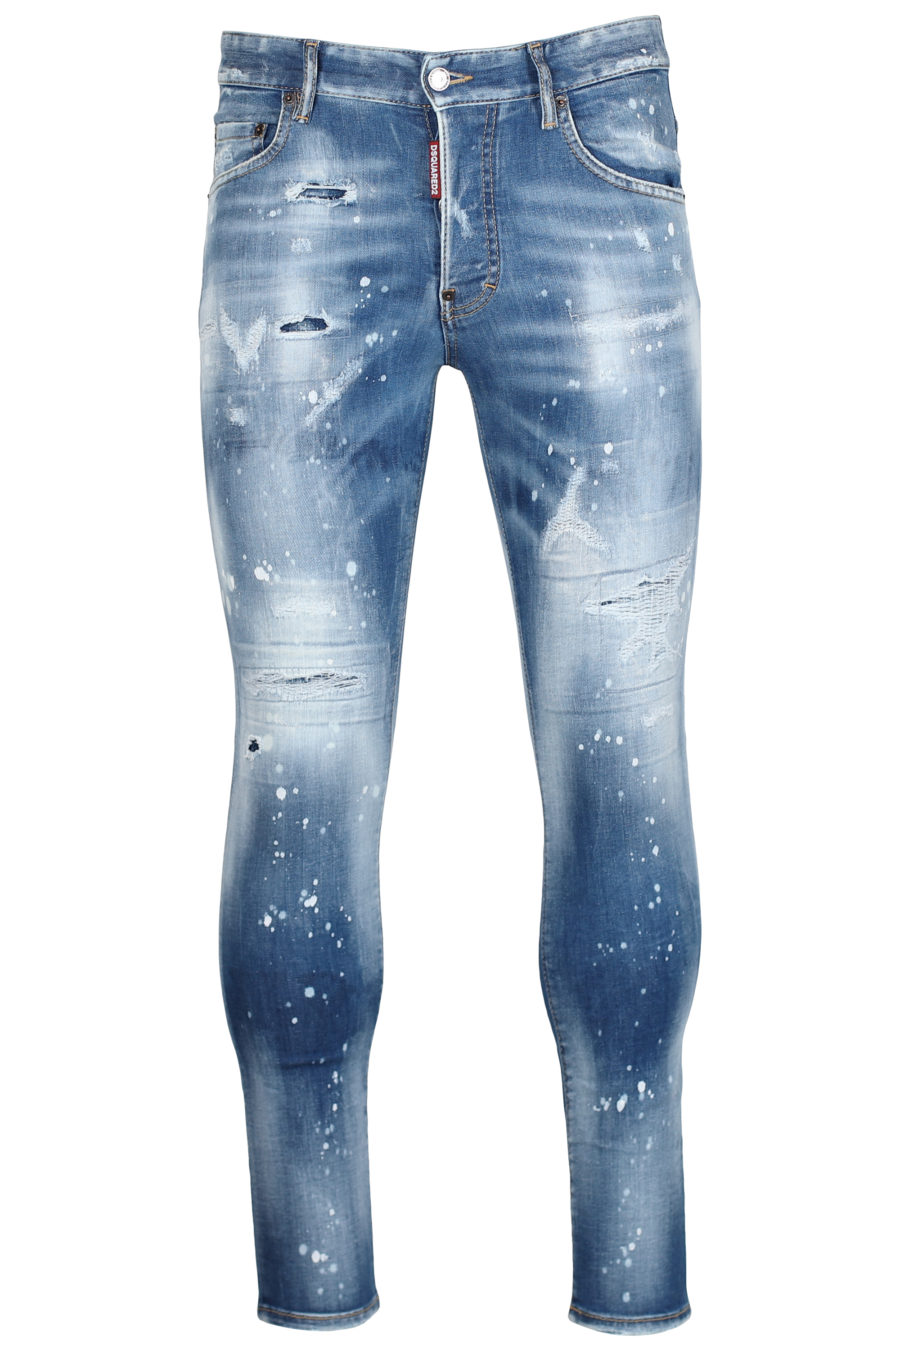 Blue jeans "Skater jean" - IMG 2438 1